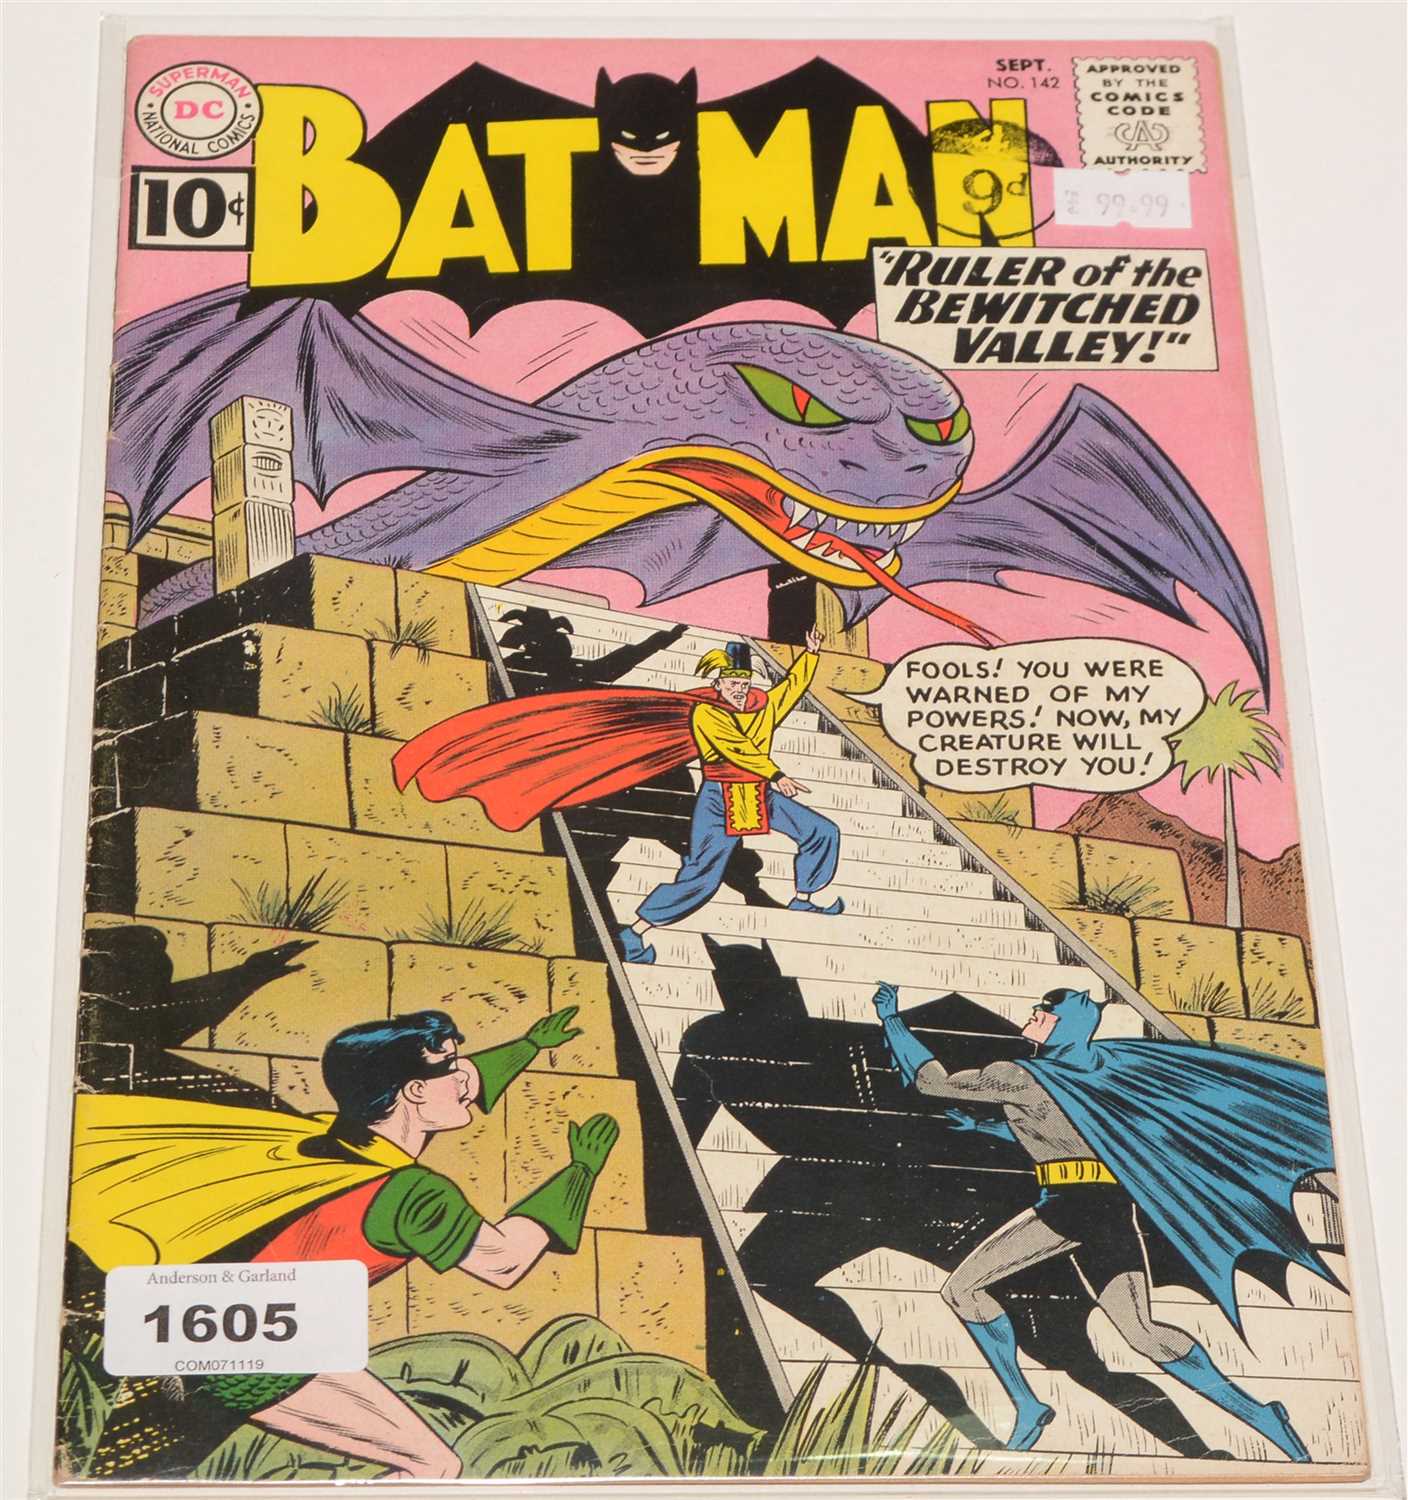 Lot 1605 - Batman No. 142